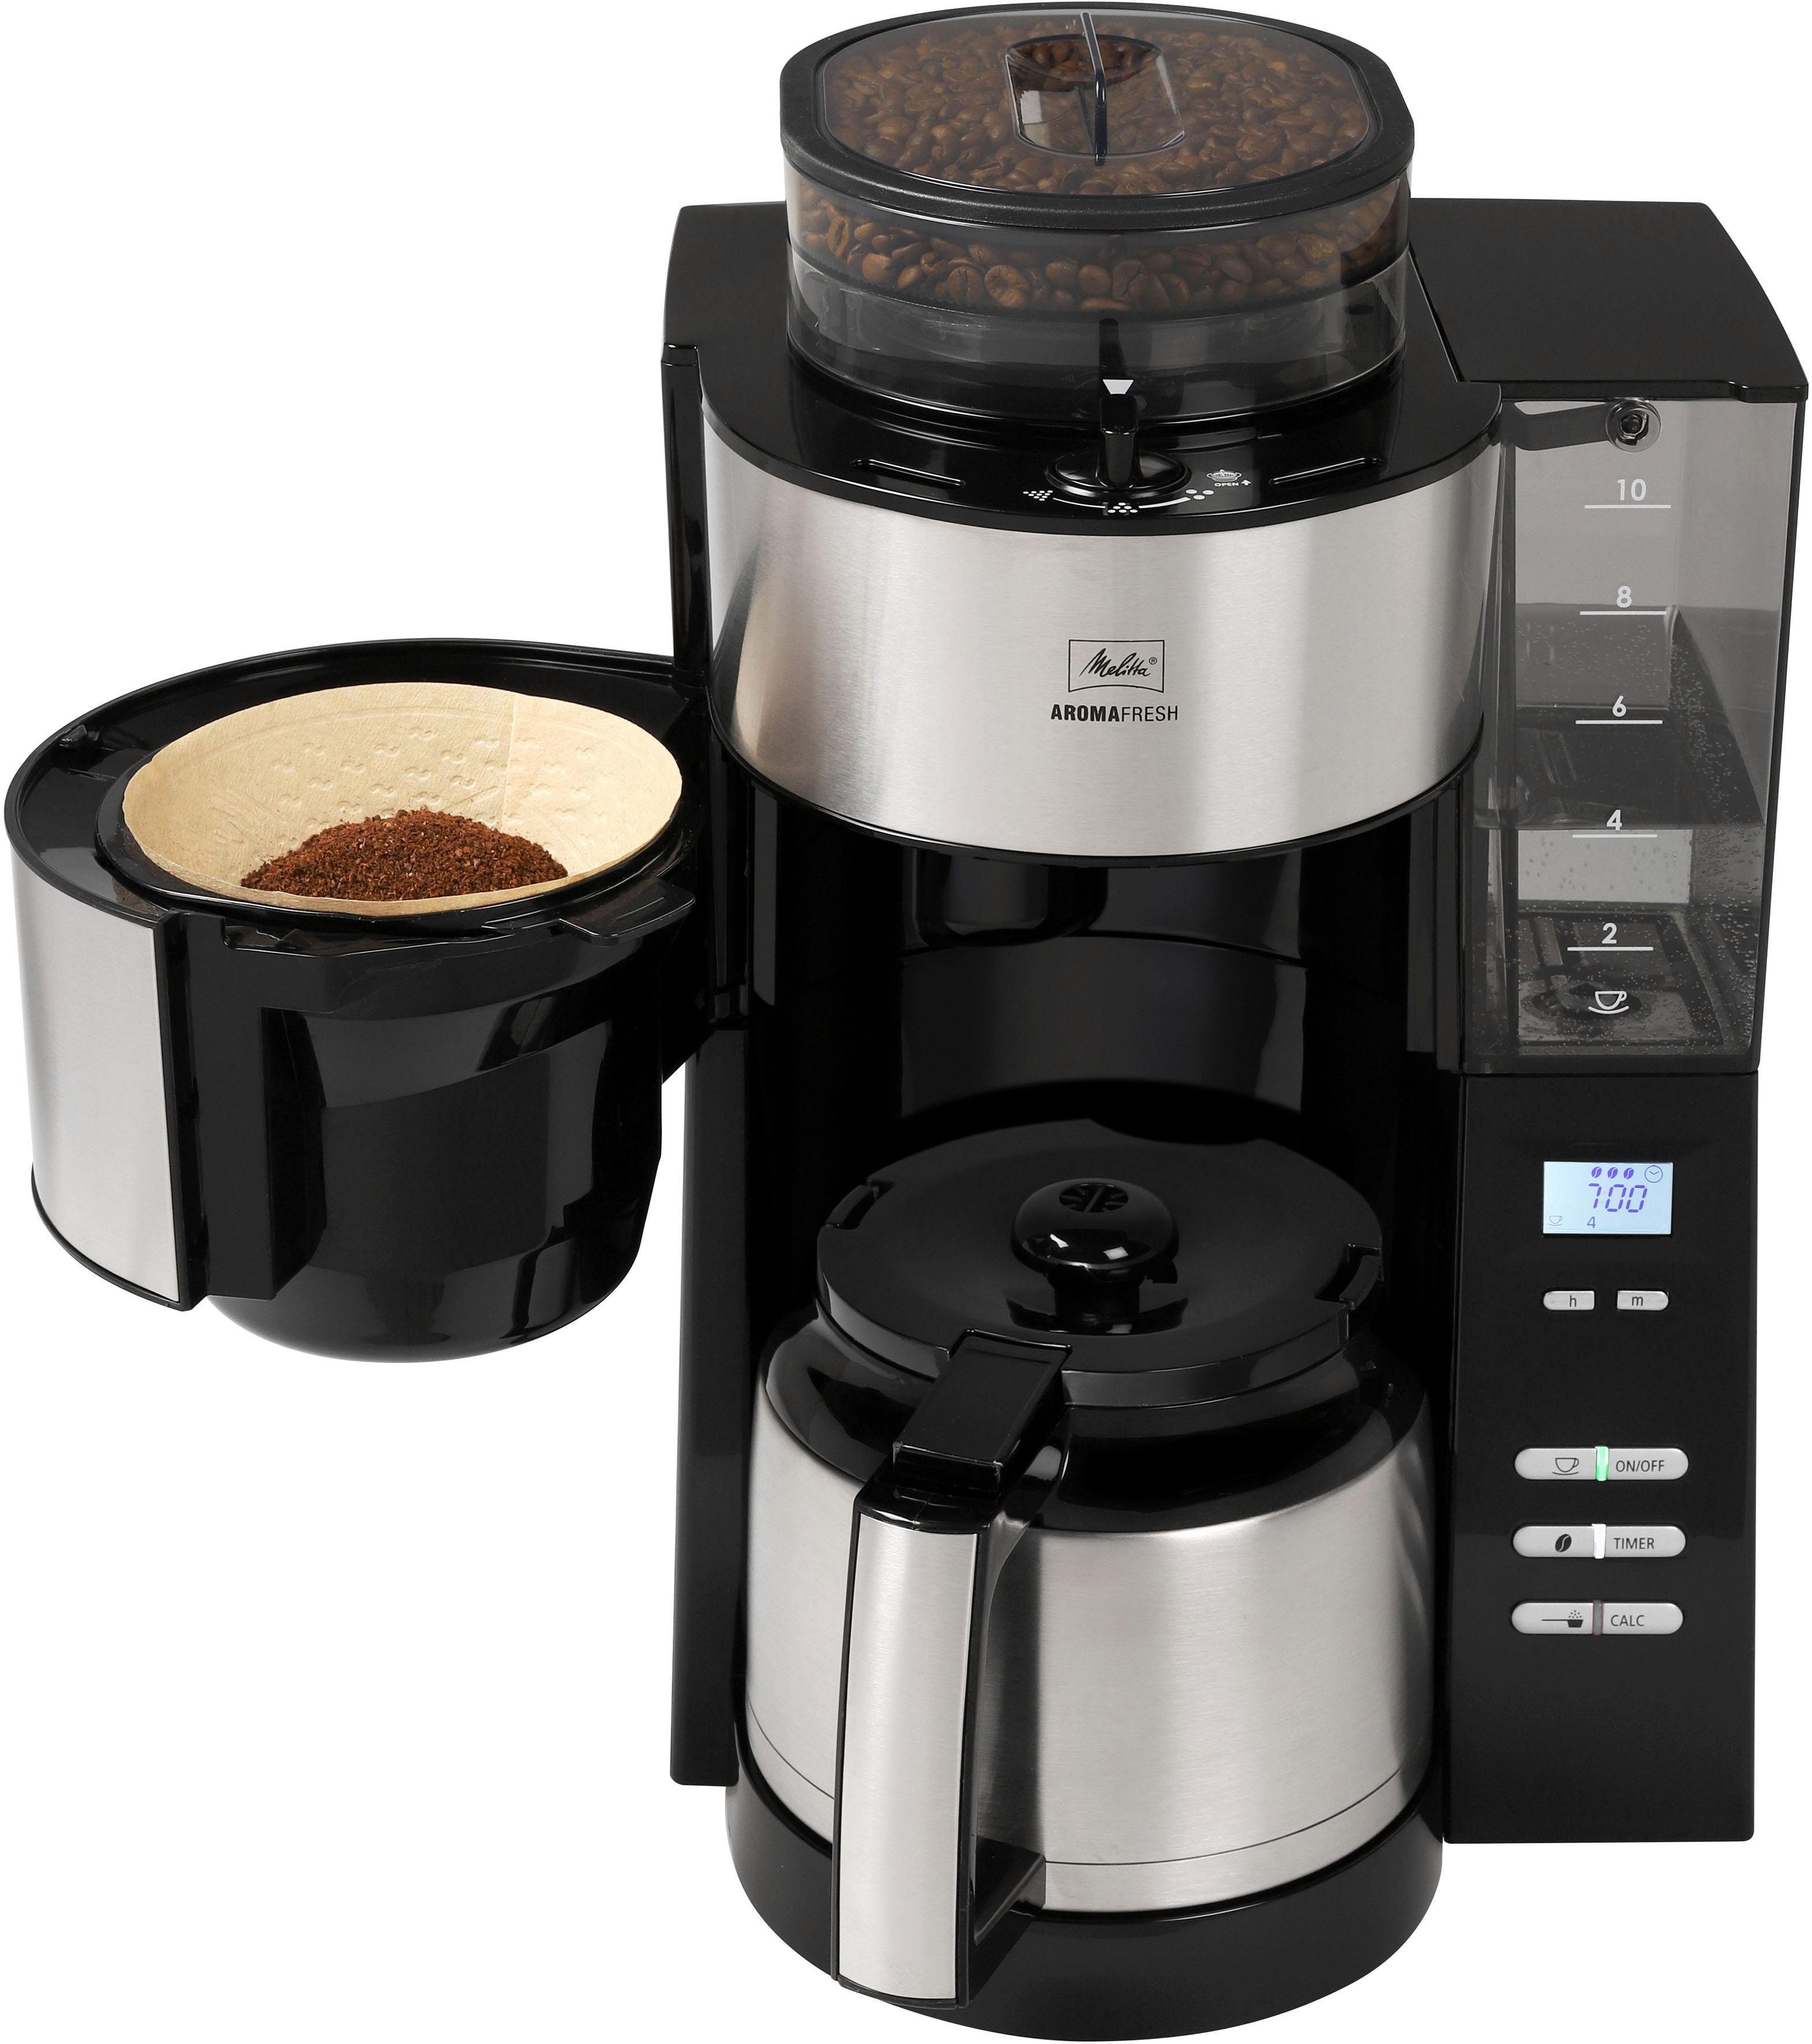 Melitta Kaffeemaschine mit Mahlwerk AromaFresh Therm 1021-12, 1,2l  Kaffeekanne, Papierfilter 1x4 online kaufen | OTTO